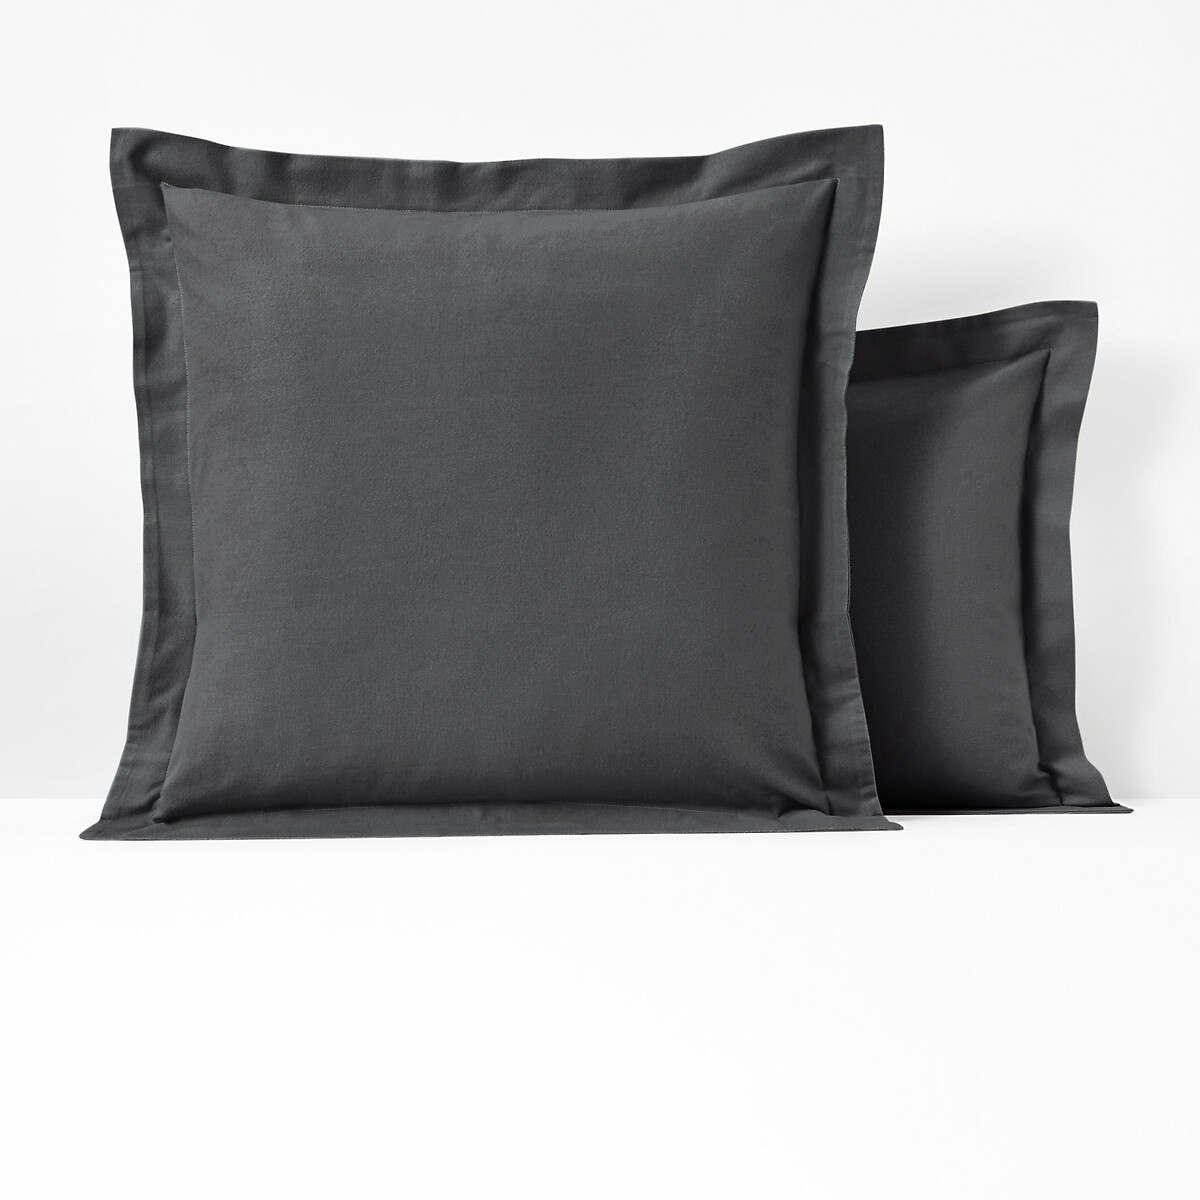 Чехол на подушку или на валик из фланели Scenario 85 x 185 см серый